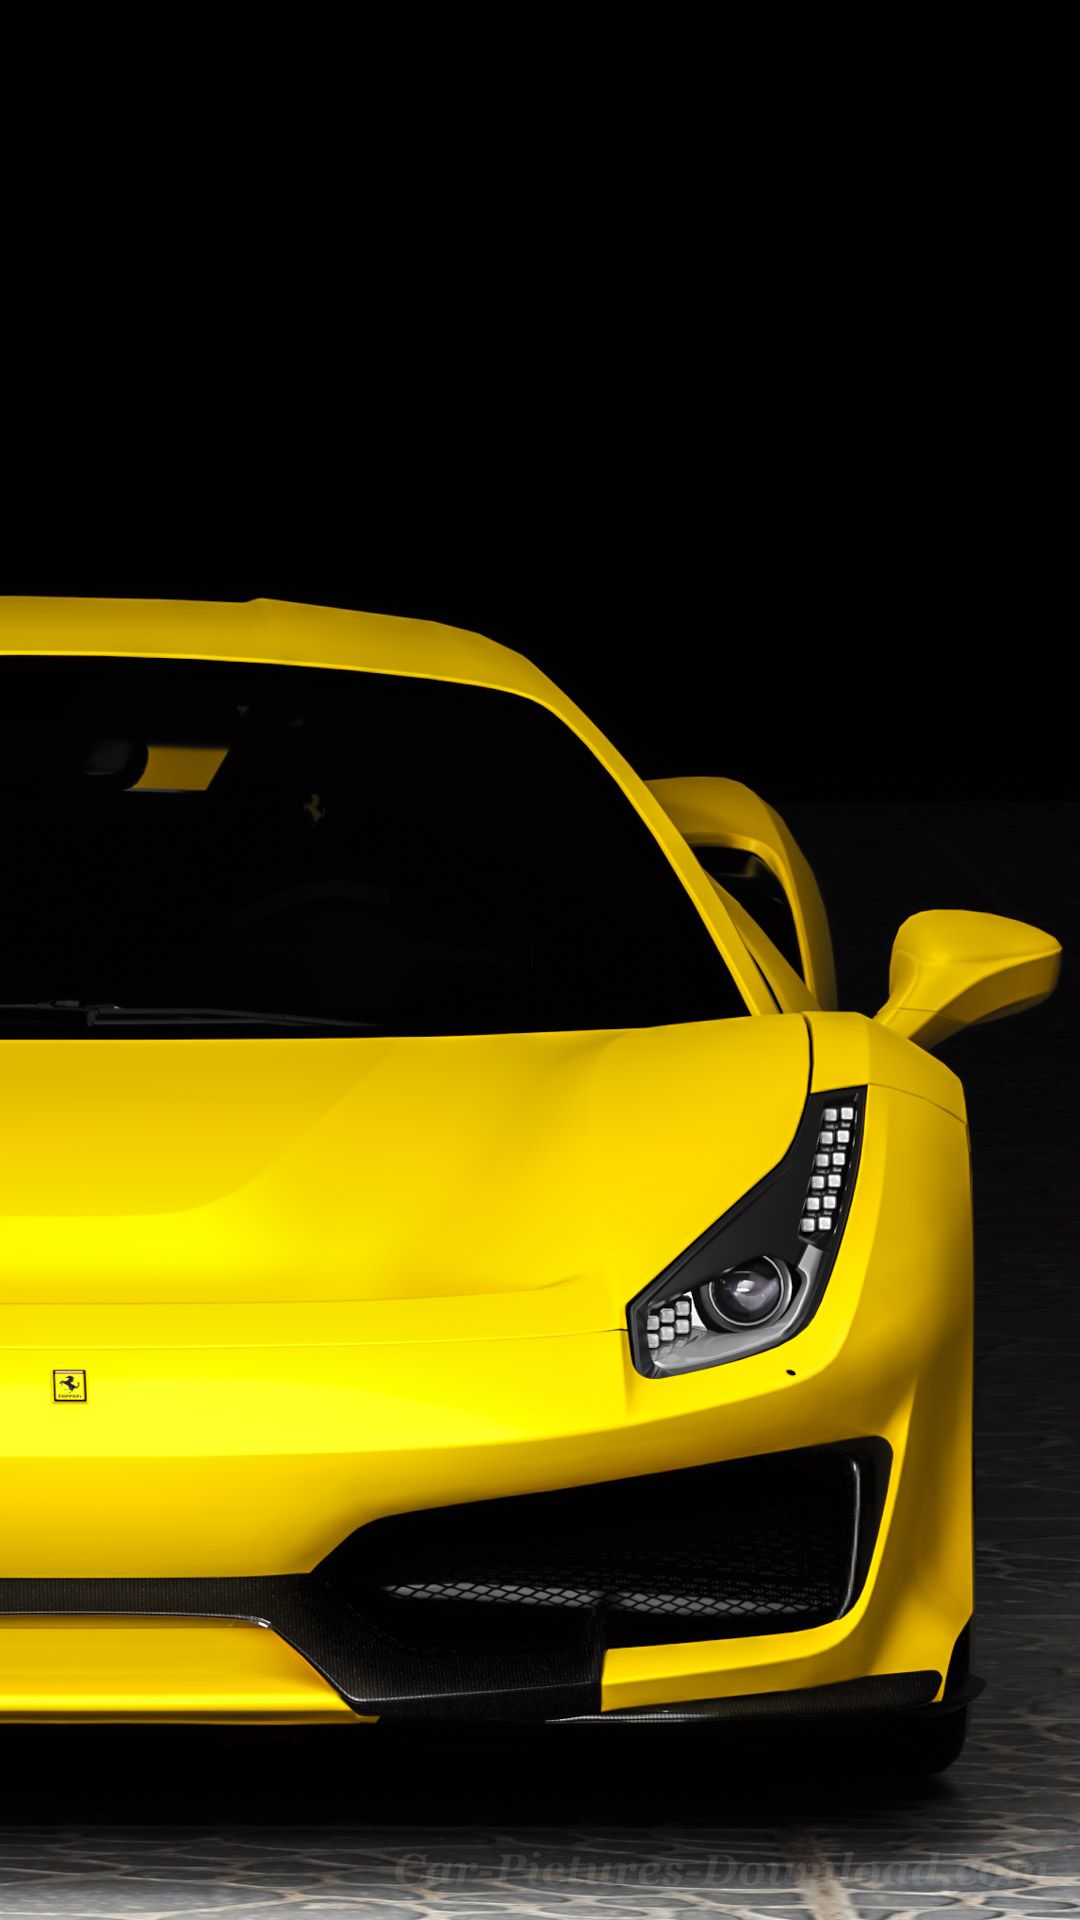 Yellow Ferrari Wallpapers: Hình nền Ferrari màu vàng sẽ khiến các tín đồ tốc độ hào hứng không ngừng. Hãy tìm kiếm những thiết kế xe thể thao đầy mê hoặc và trang trí cho điện thoại của bạn thật đẳng cấp.